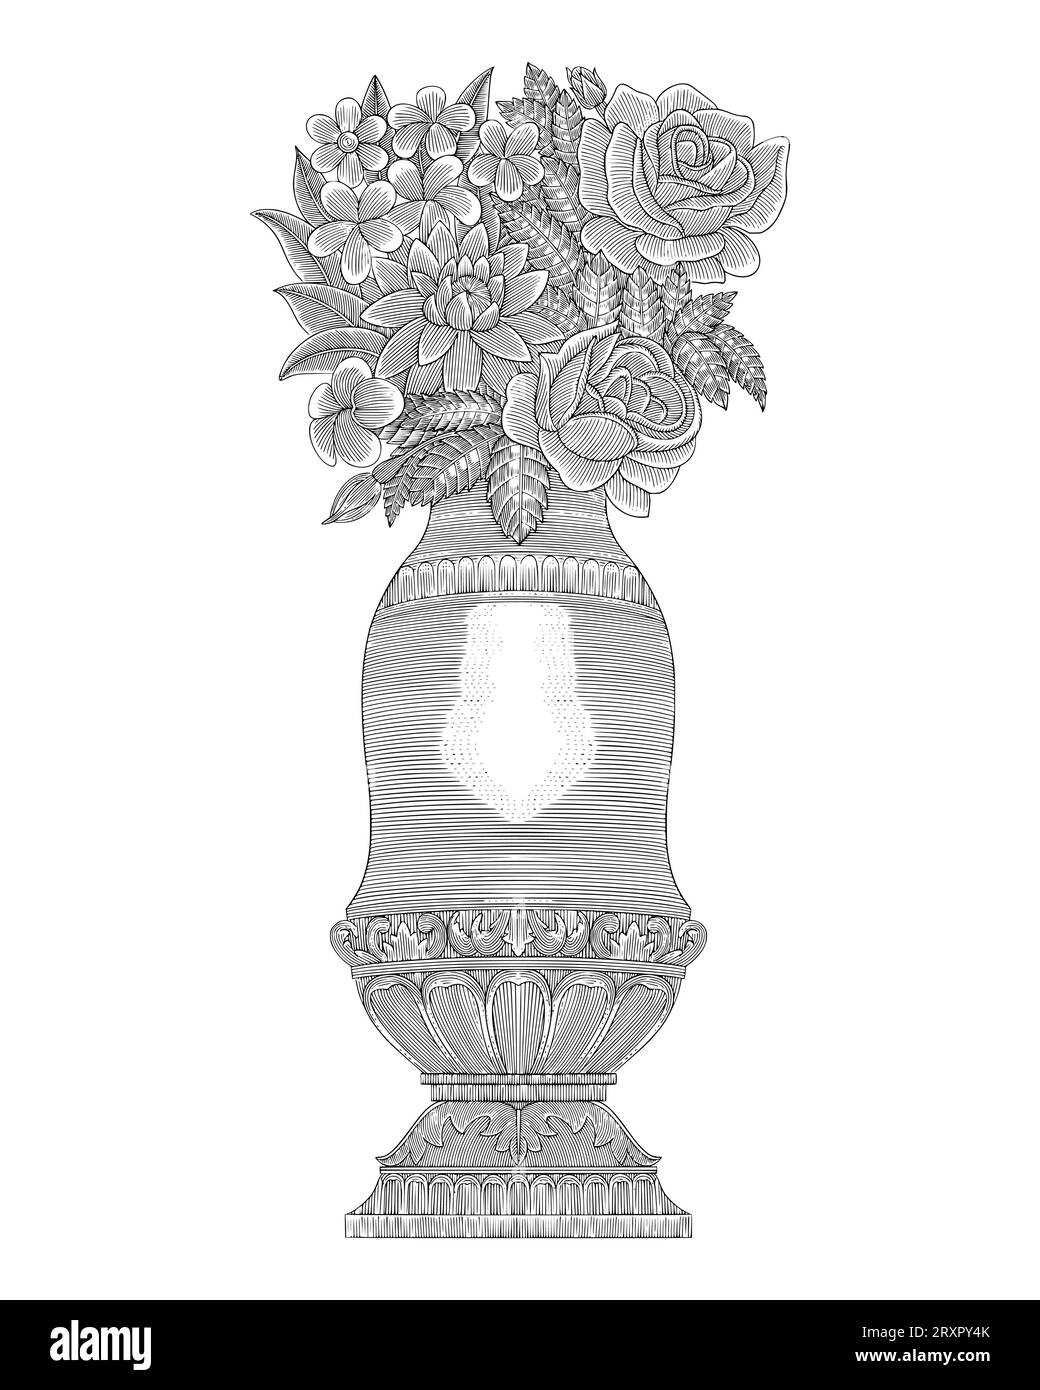 rose e fiori di frangipani con ornamento antico vaso medievale, disegno a mano in stile vintage incisione Illustrazione Vettoriale